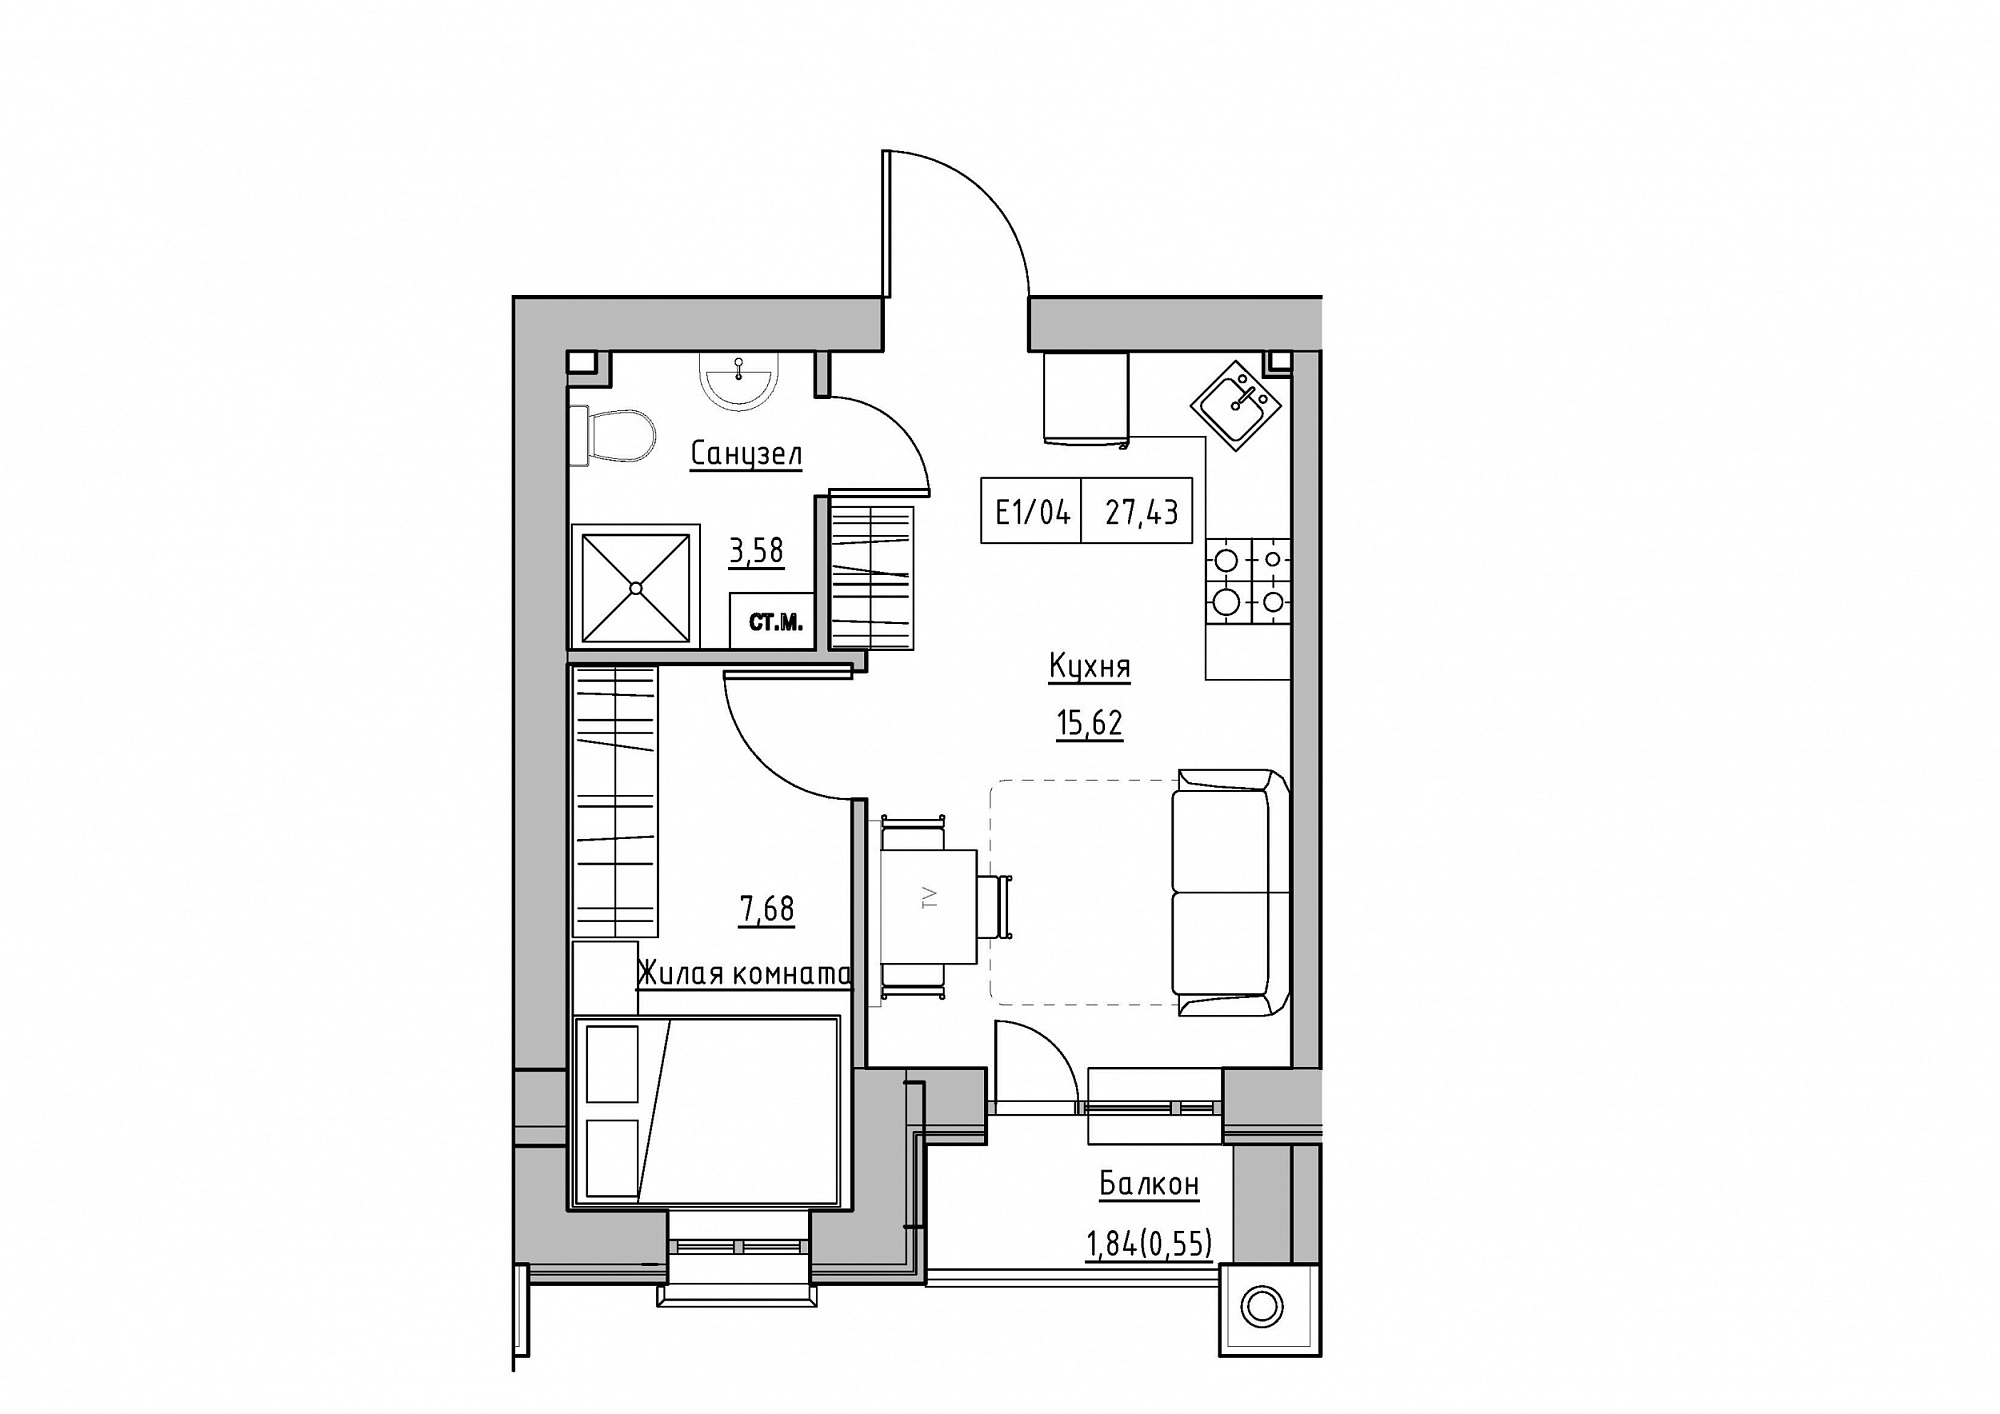 Планування 1-к квартира площею 27.43м2, KS-011-05/0012.